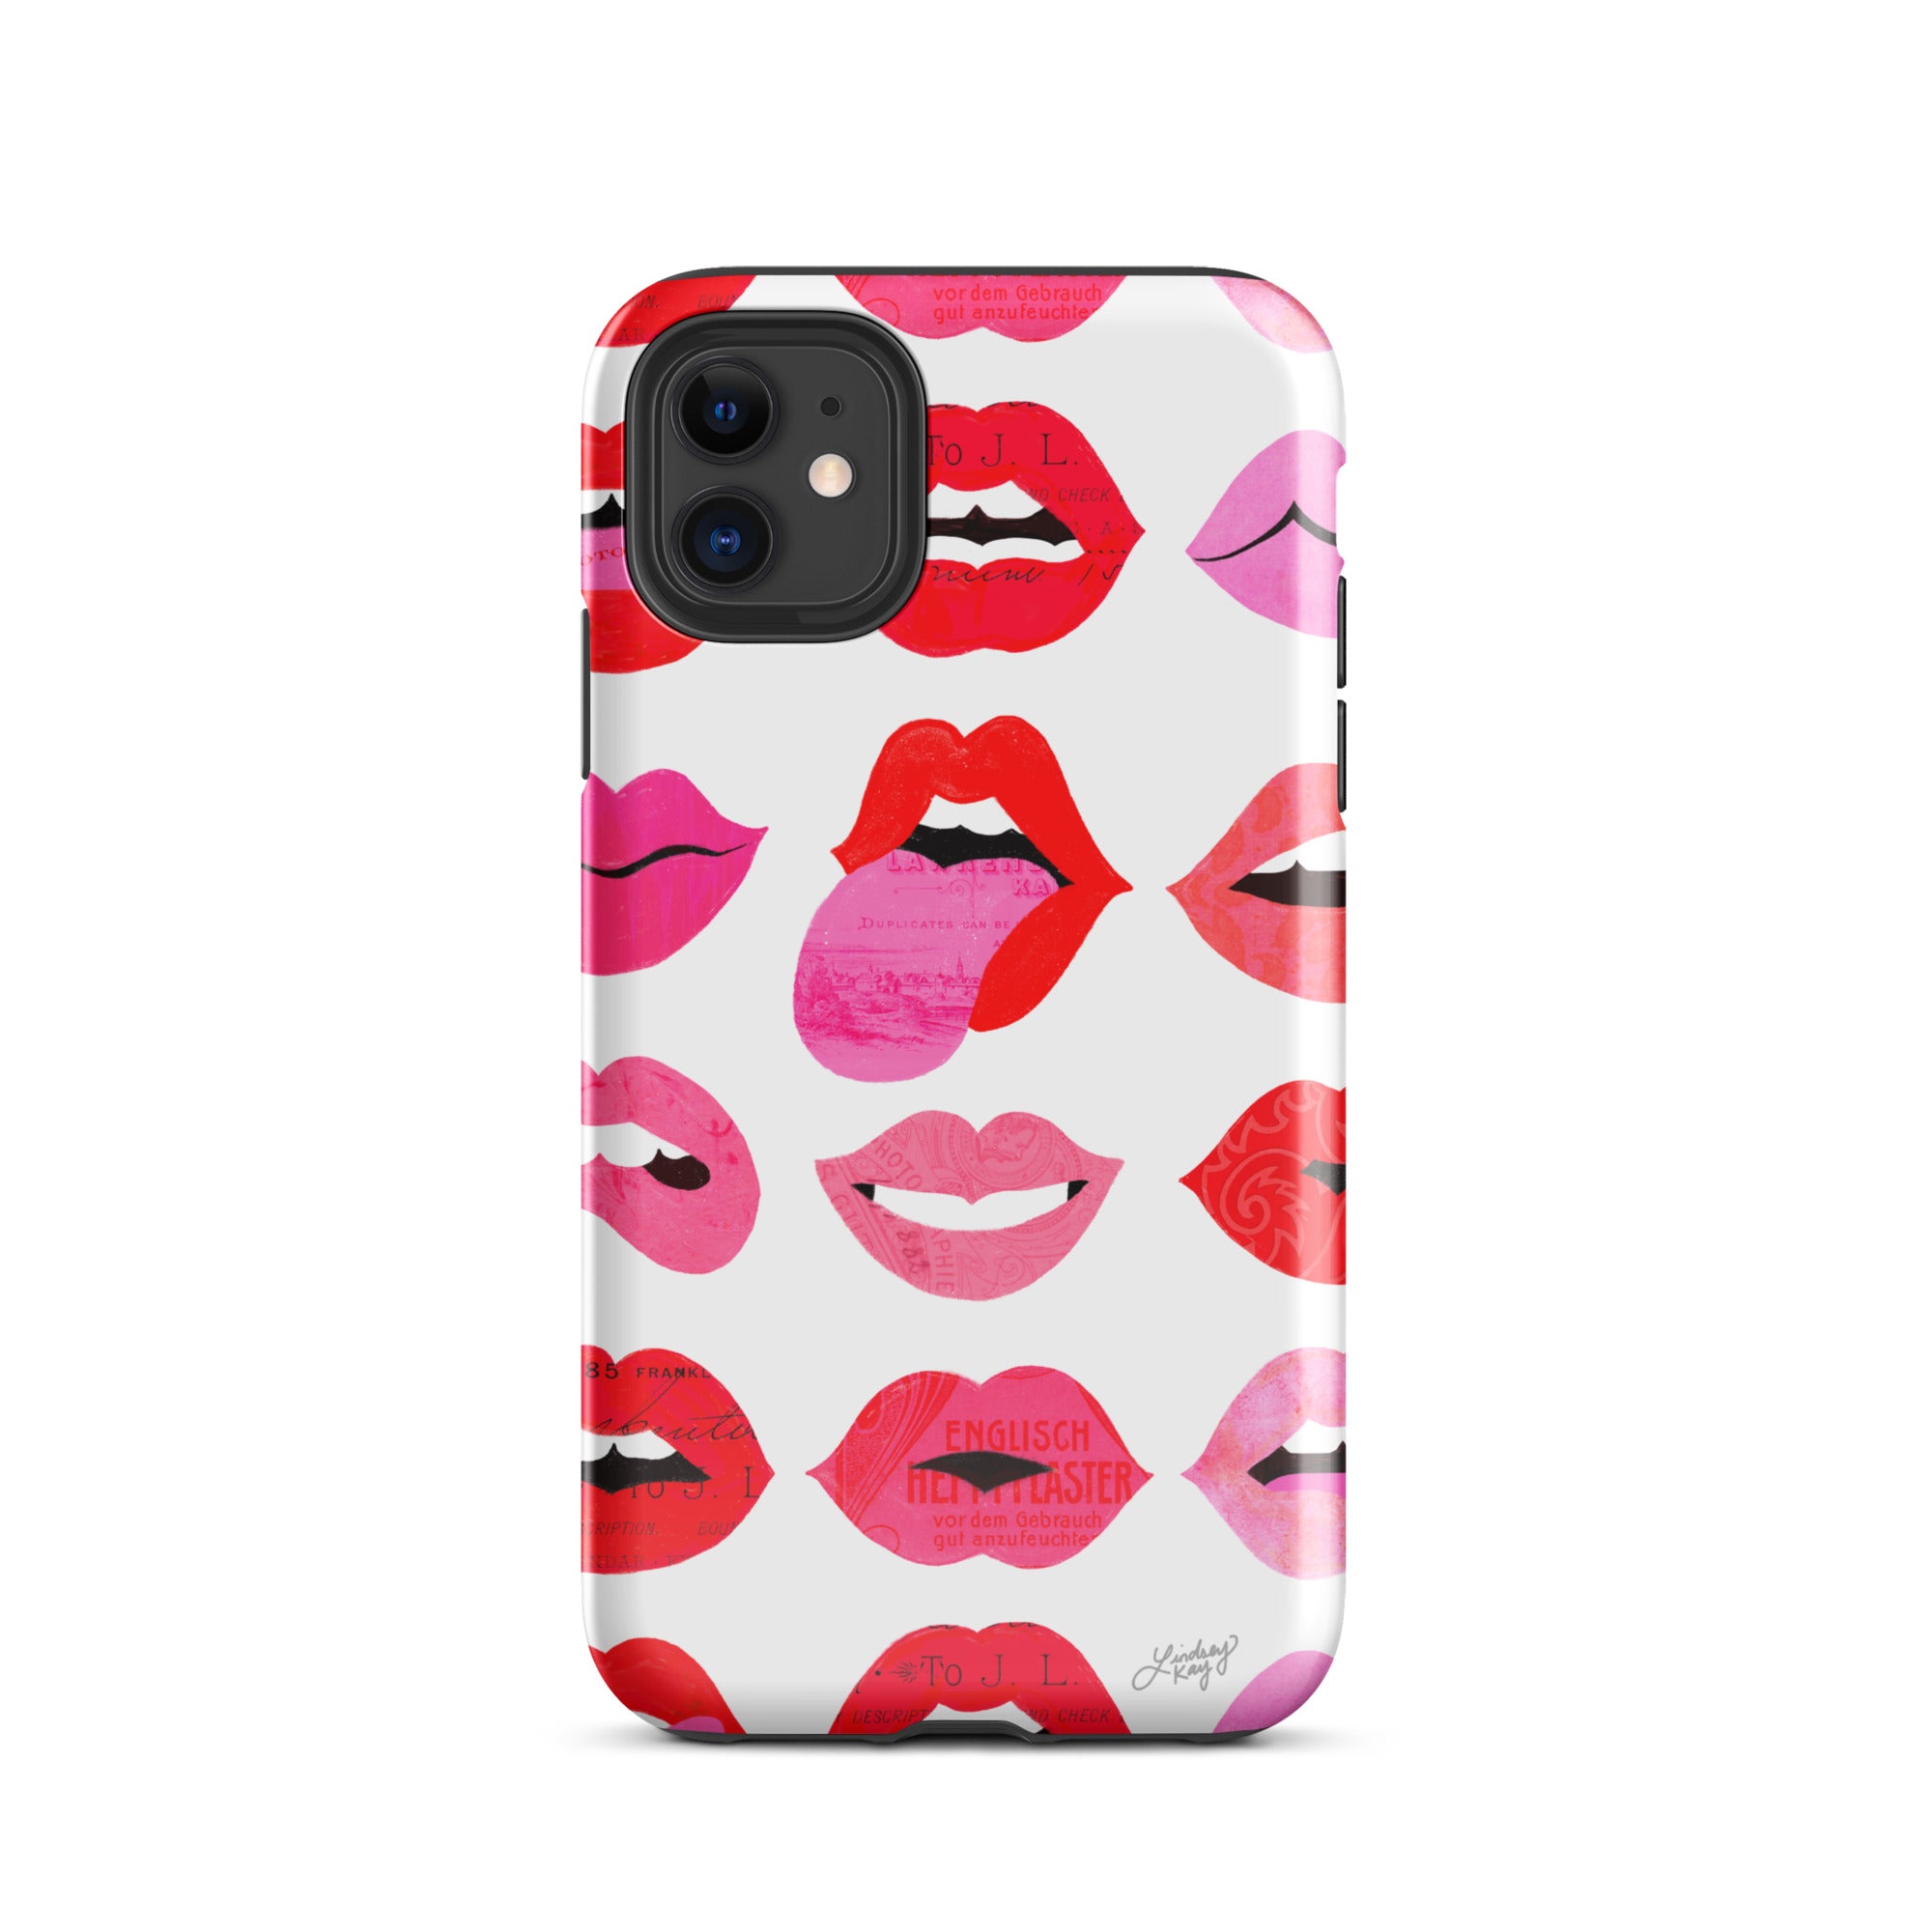 Labios de amor - Funda resistente para iPhone®